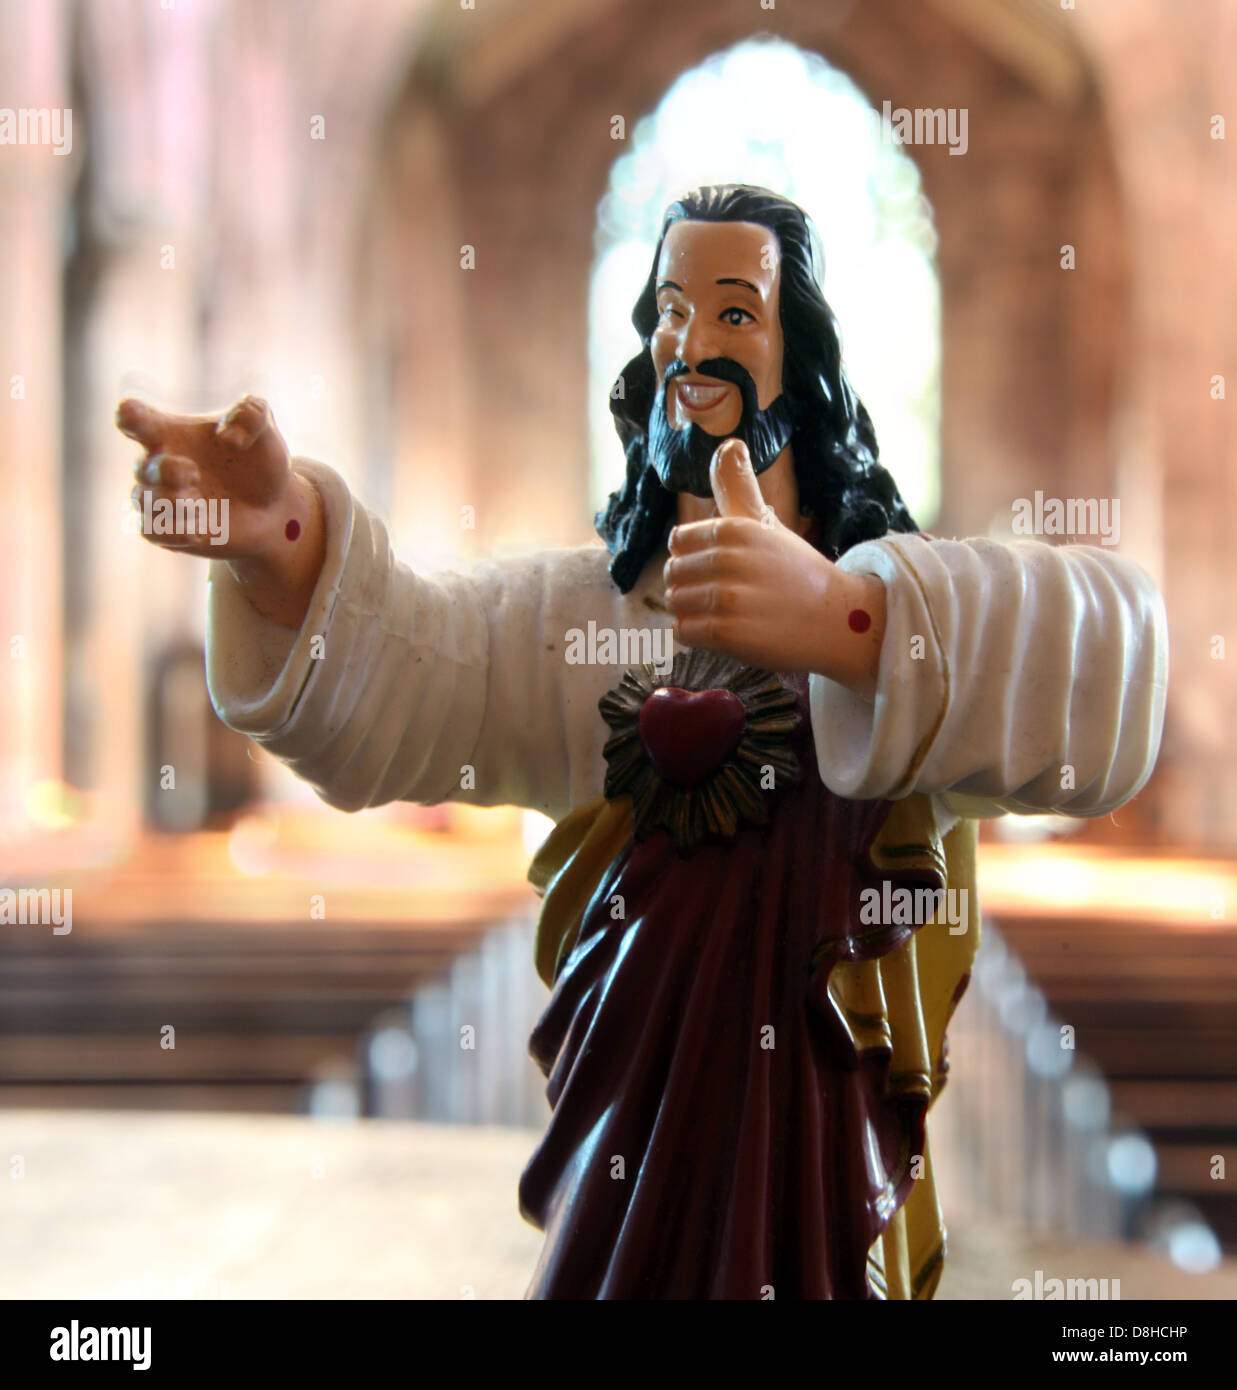 Cool Buddy Jesus Christus Statue, in einer katholischen Kirche, akzeptables Gesicht des Christentums, JC der Retter, aus Ben Affleck, Matt Damon Dogma Comedy Film Stockfoto